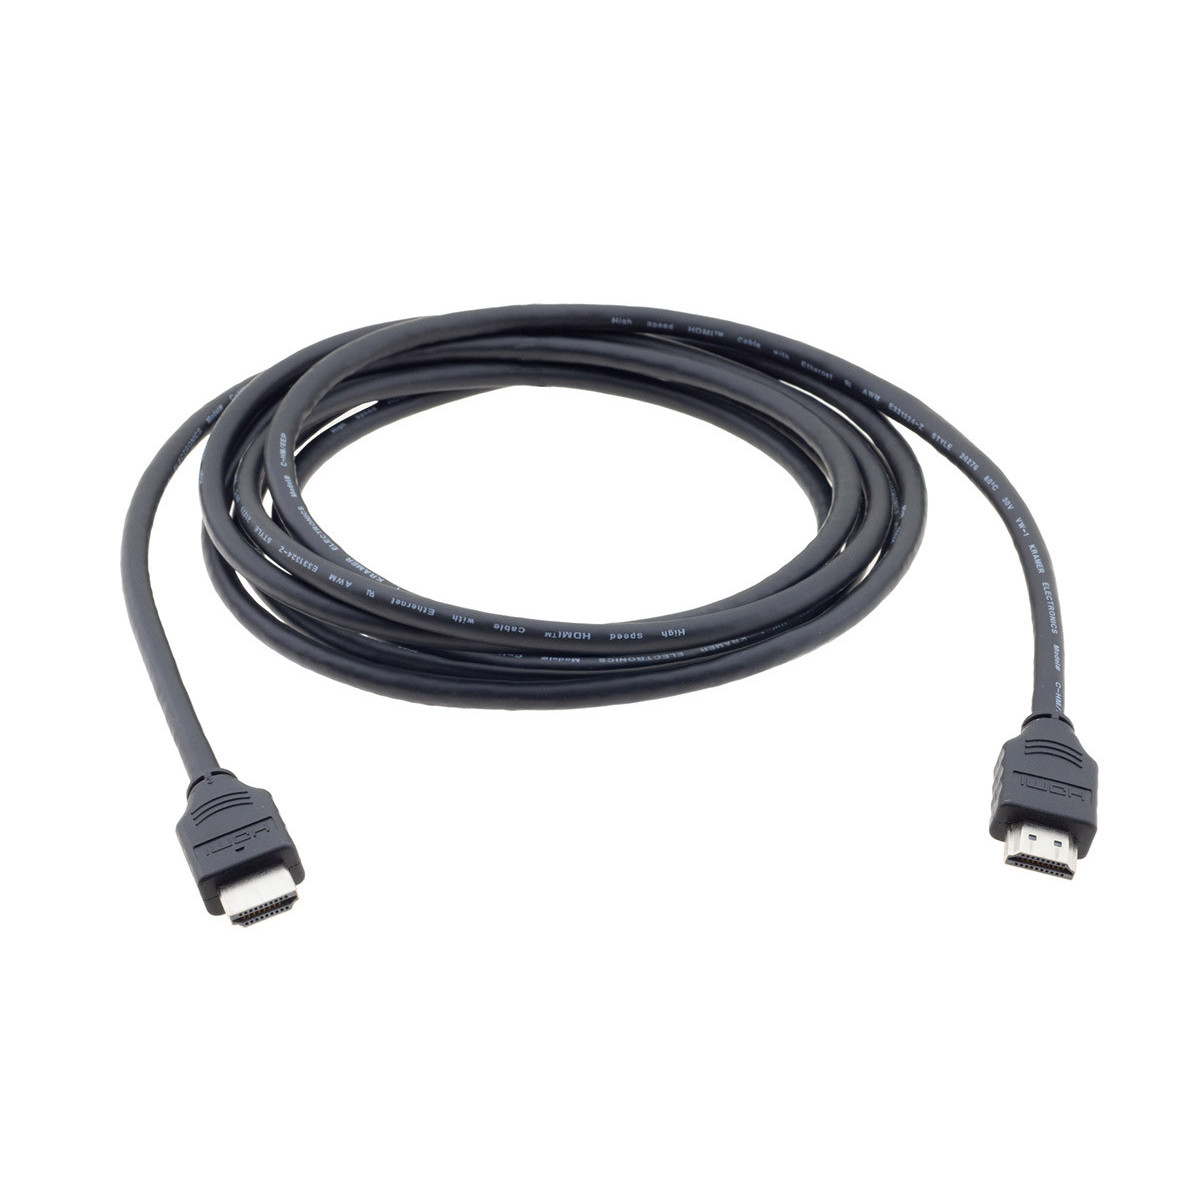 C-HM/HM/FLAT/ETH Câble HDMI plat Haut Débit avec Ethernet